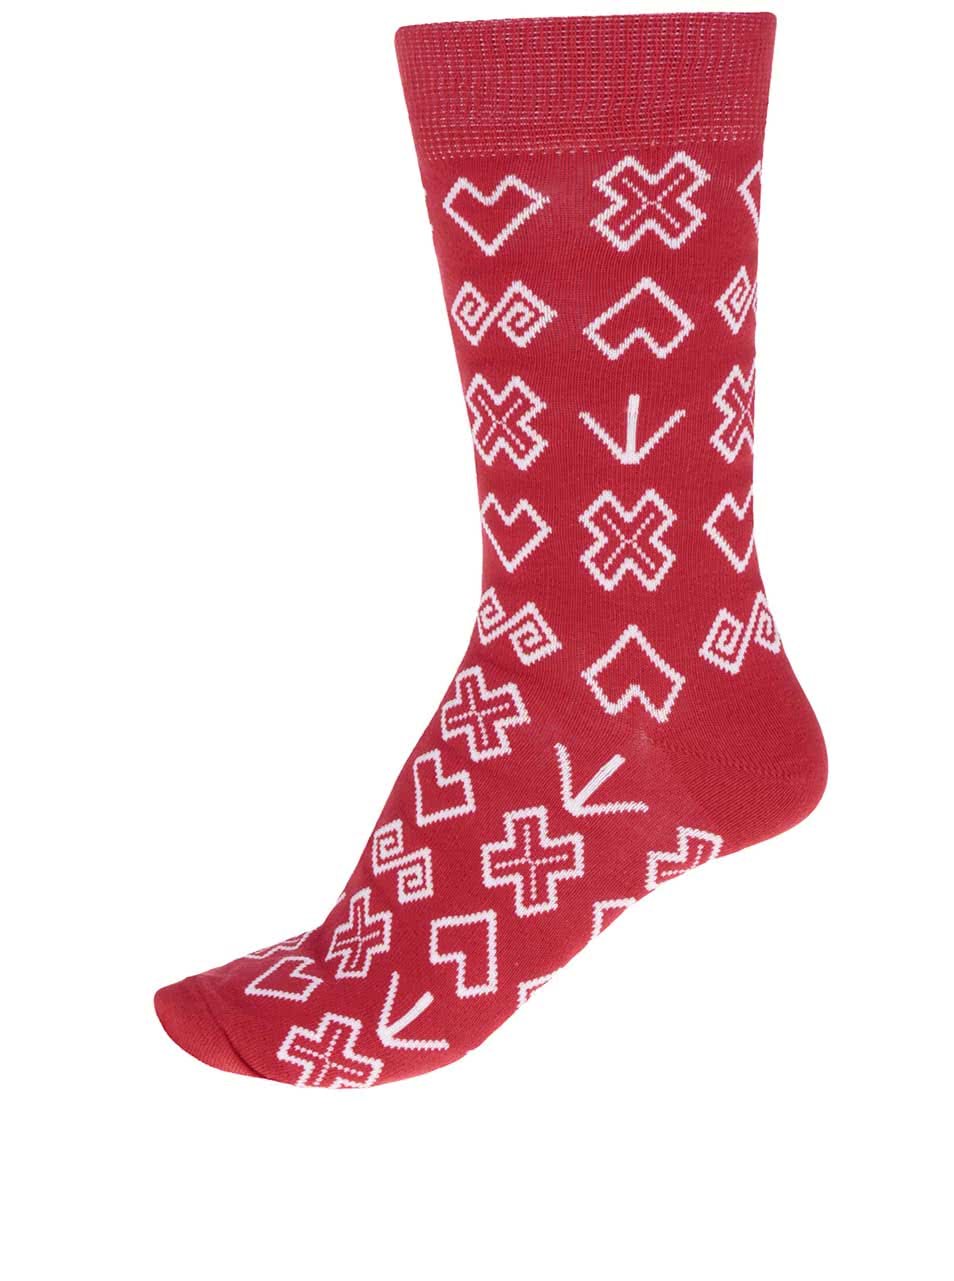 Červené pánské vzorované ponožky Puojd Šampiónky